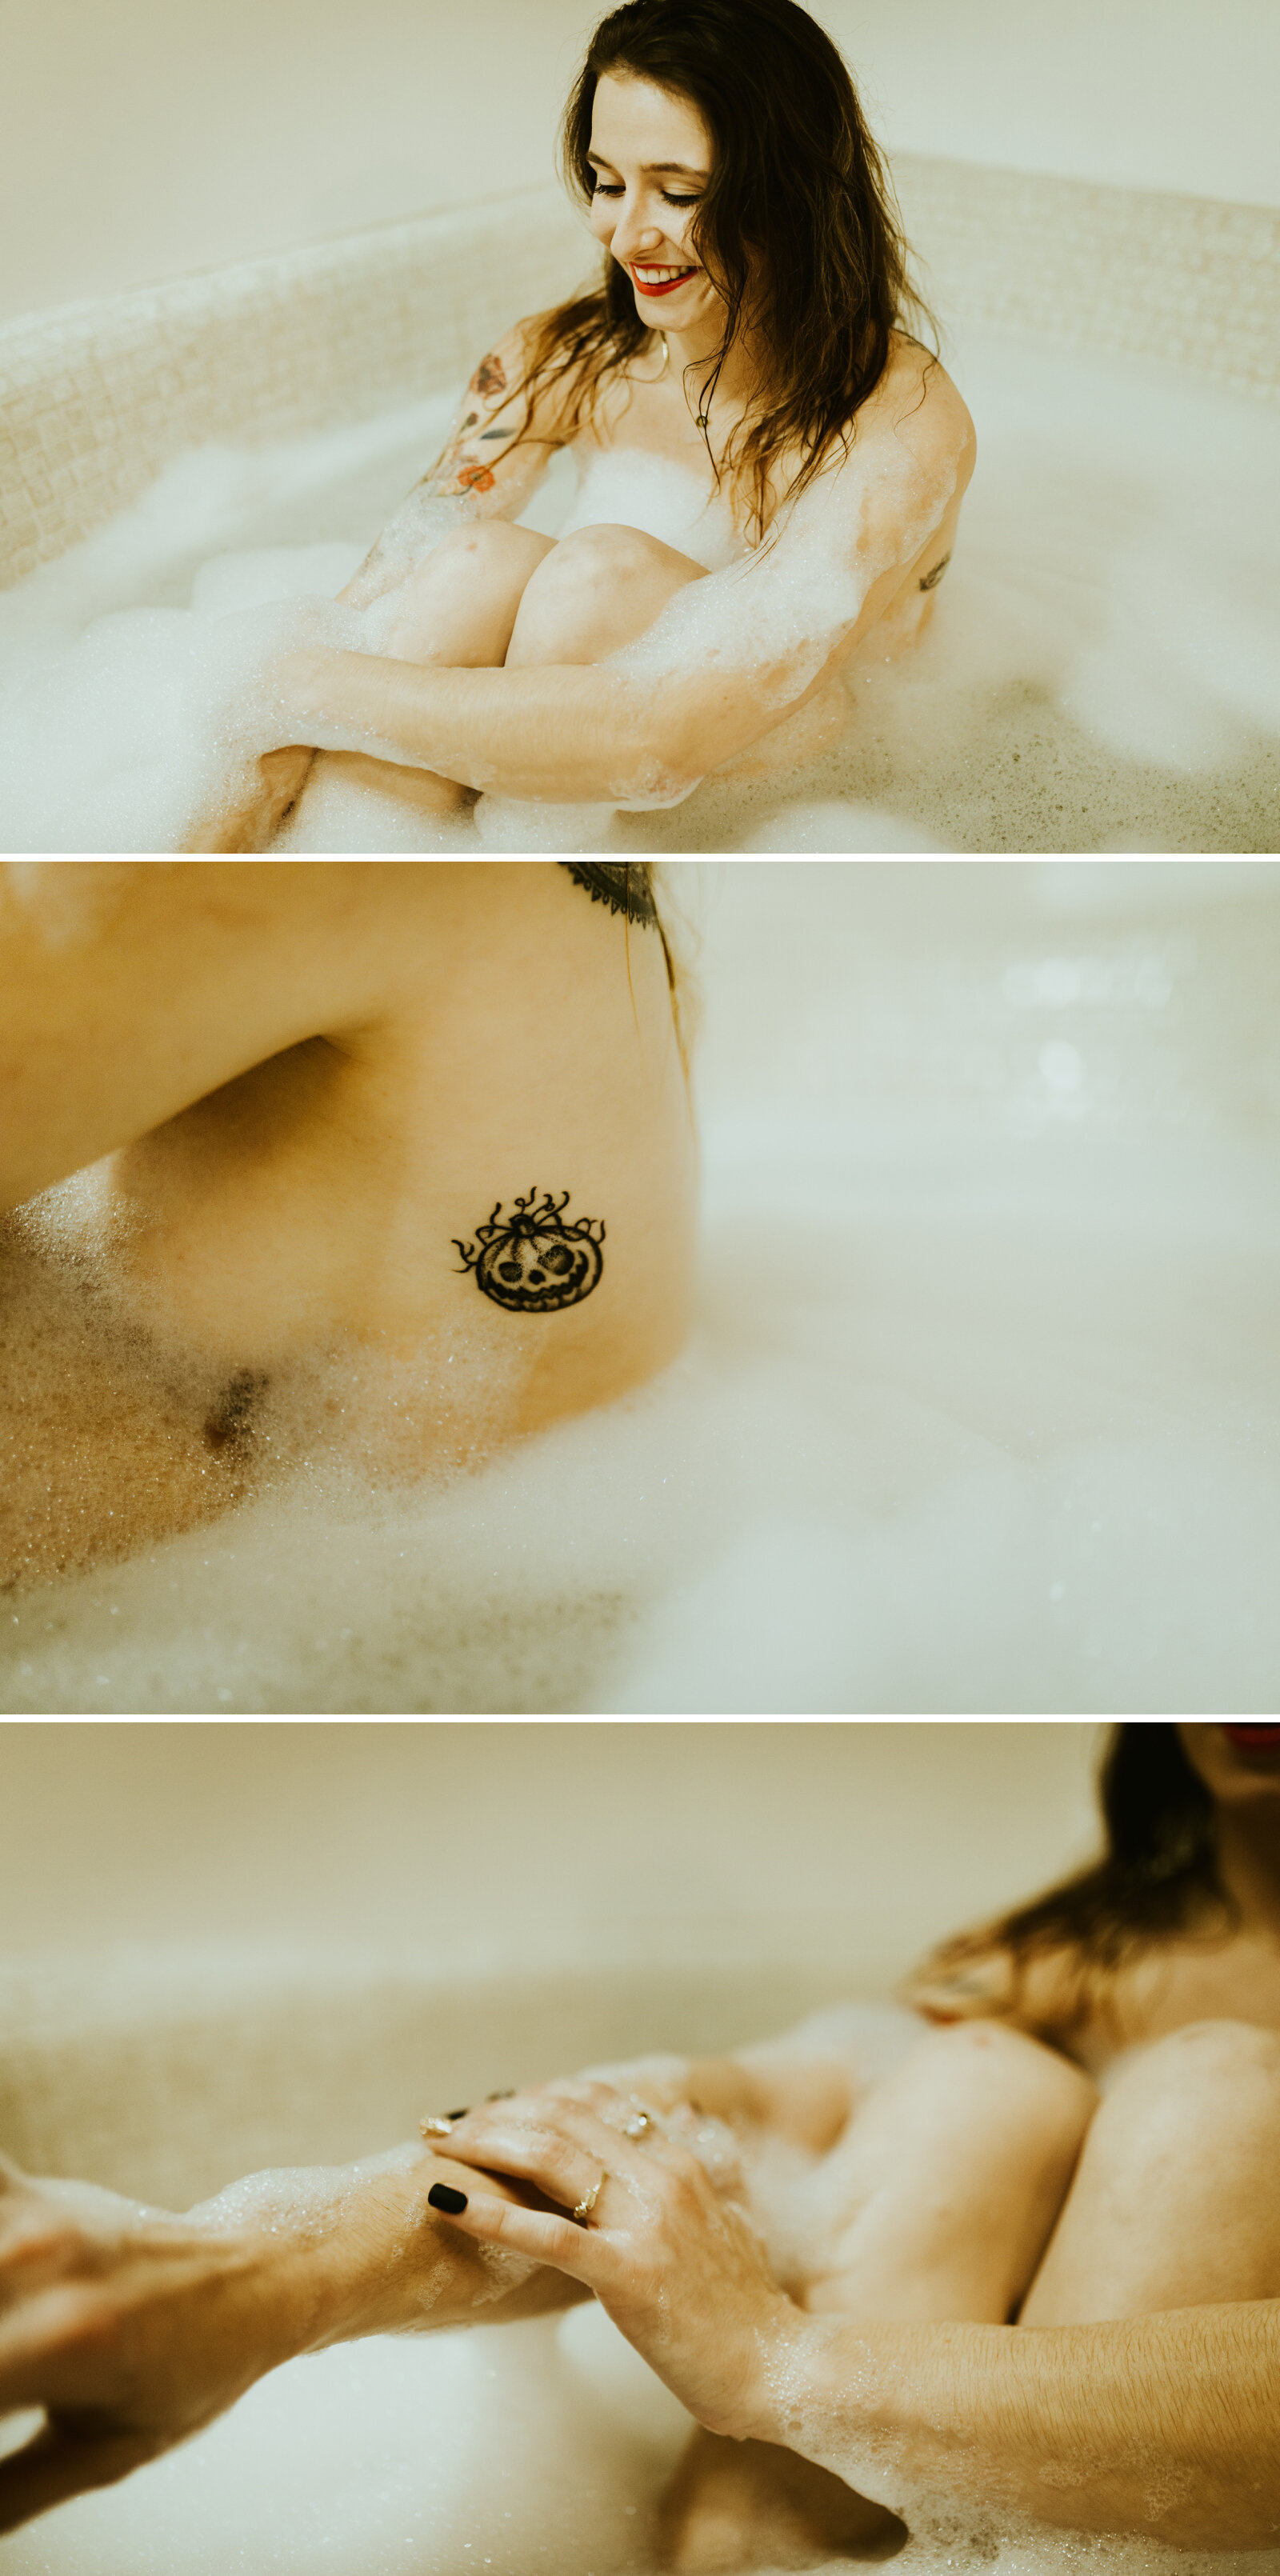 prescott arizona boudoir photography airbnb bubble bath shoot ideas frankely photography.jpg